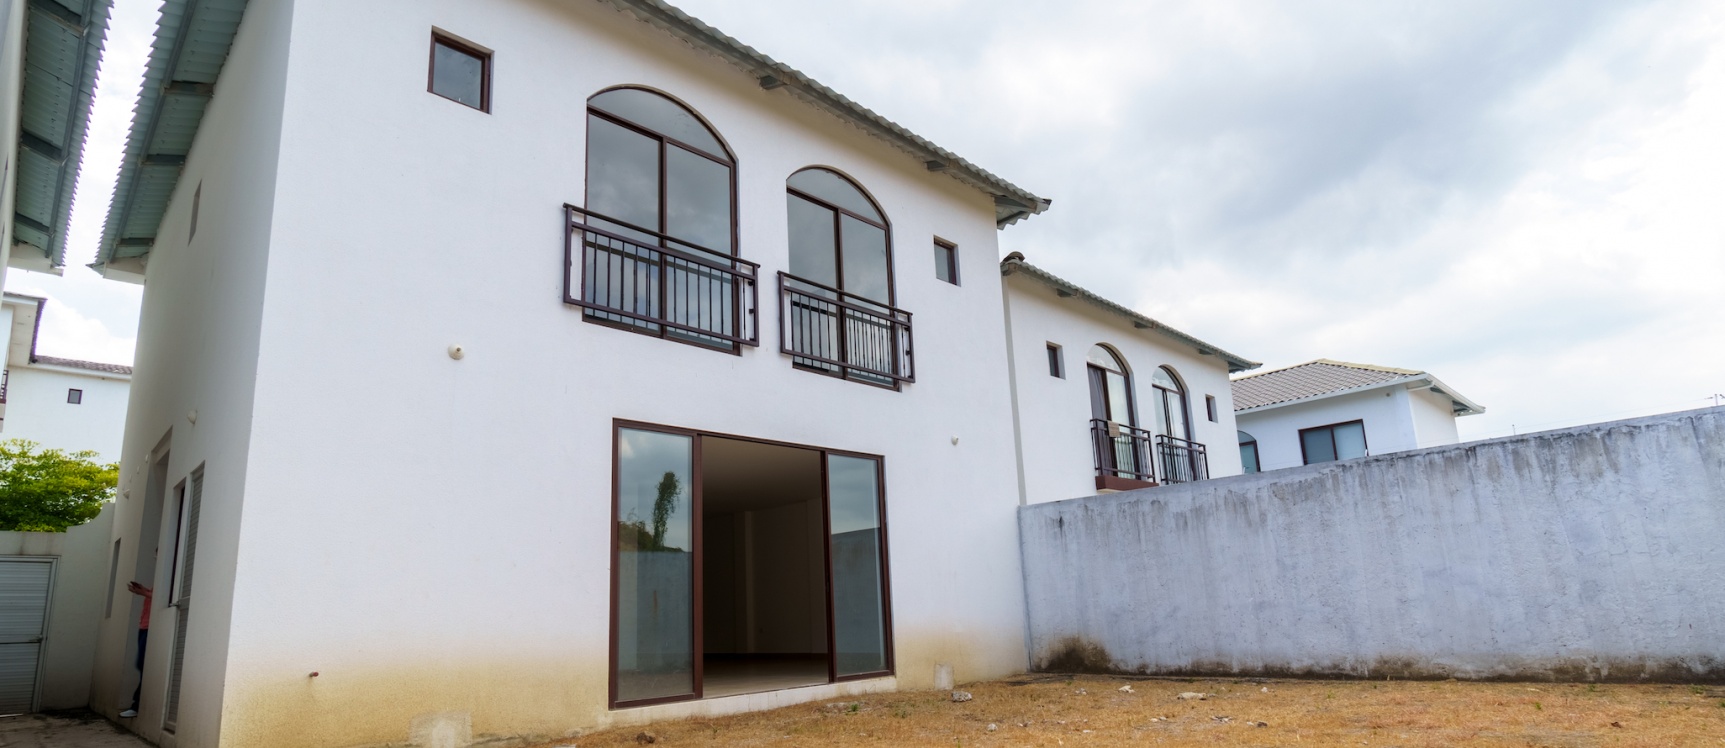 GeoBienes - Casa de 4 habitaciones en venta ubicada en la Urbanización Villas del Bosque  - Plusvalia Guayaquil Casas de venta y alquiler Inmobiliaria Ecuador